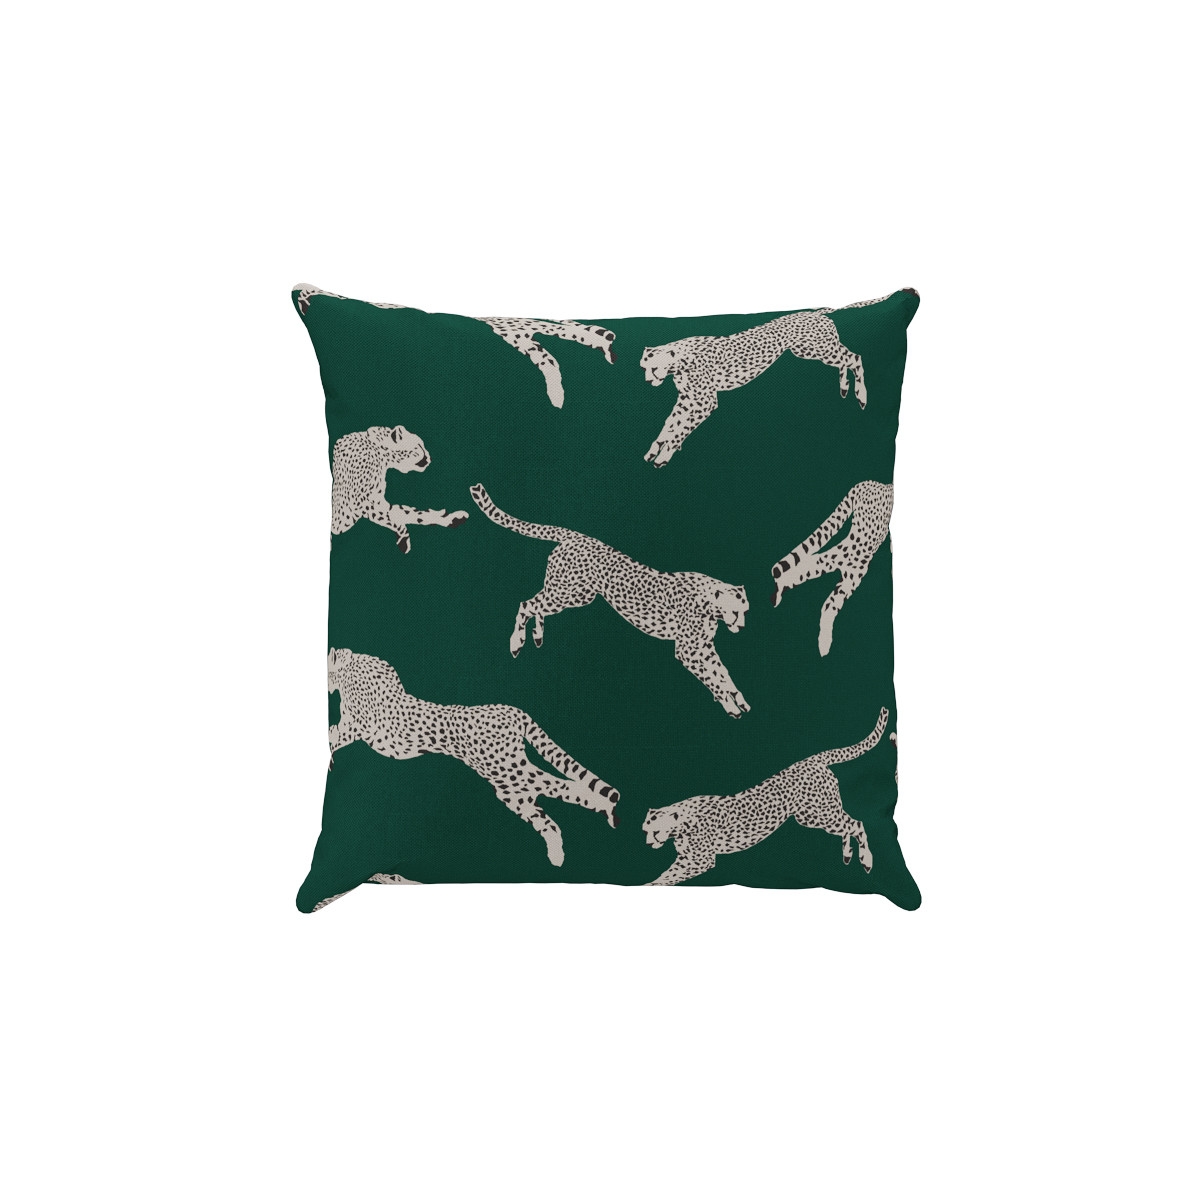 Outdoor 16" Throw Pillow | Polo Green Cheetah - Image 0